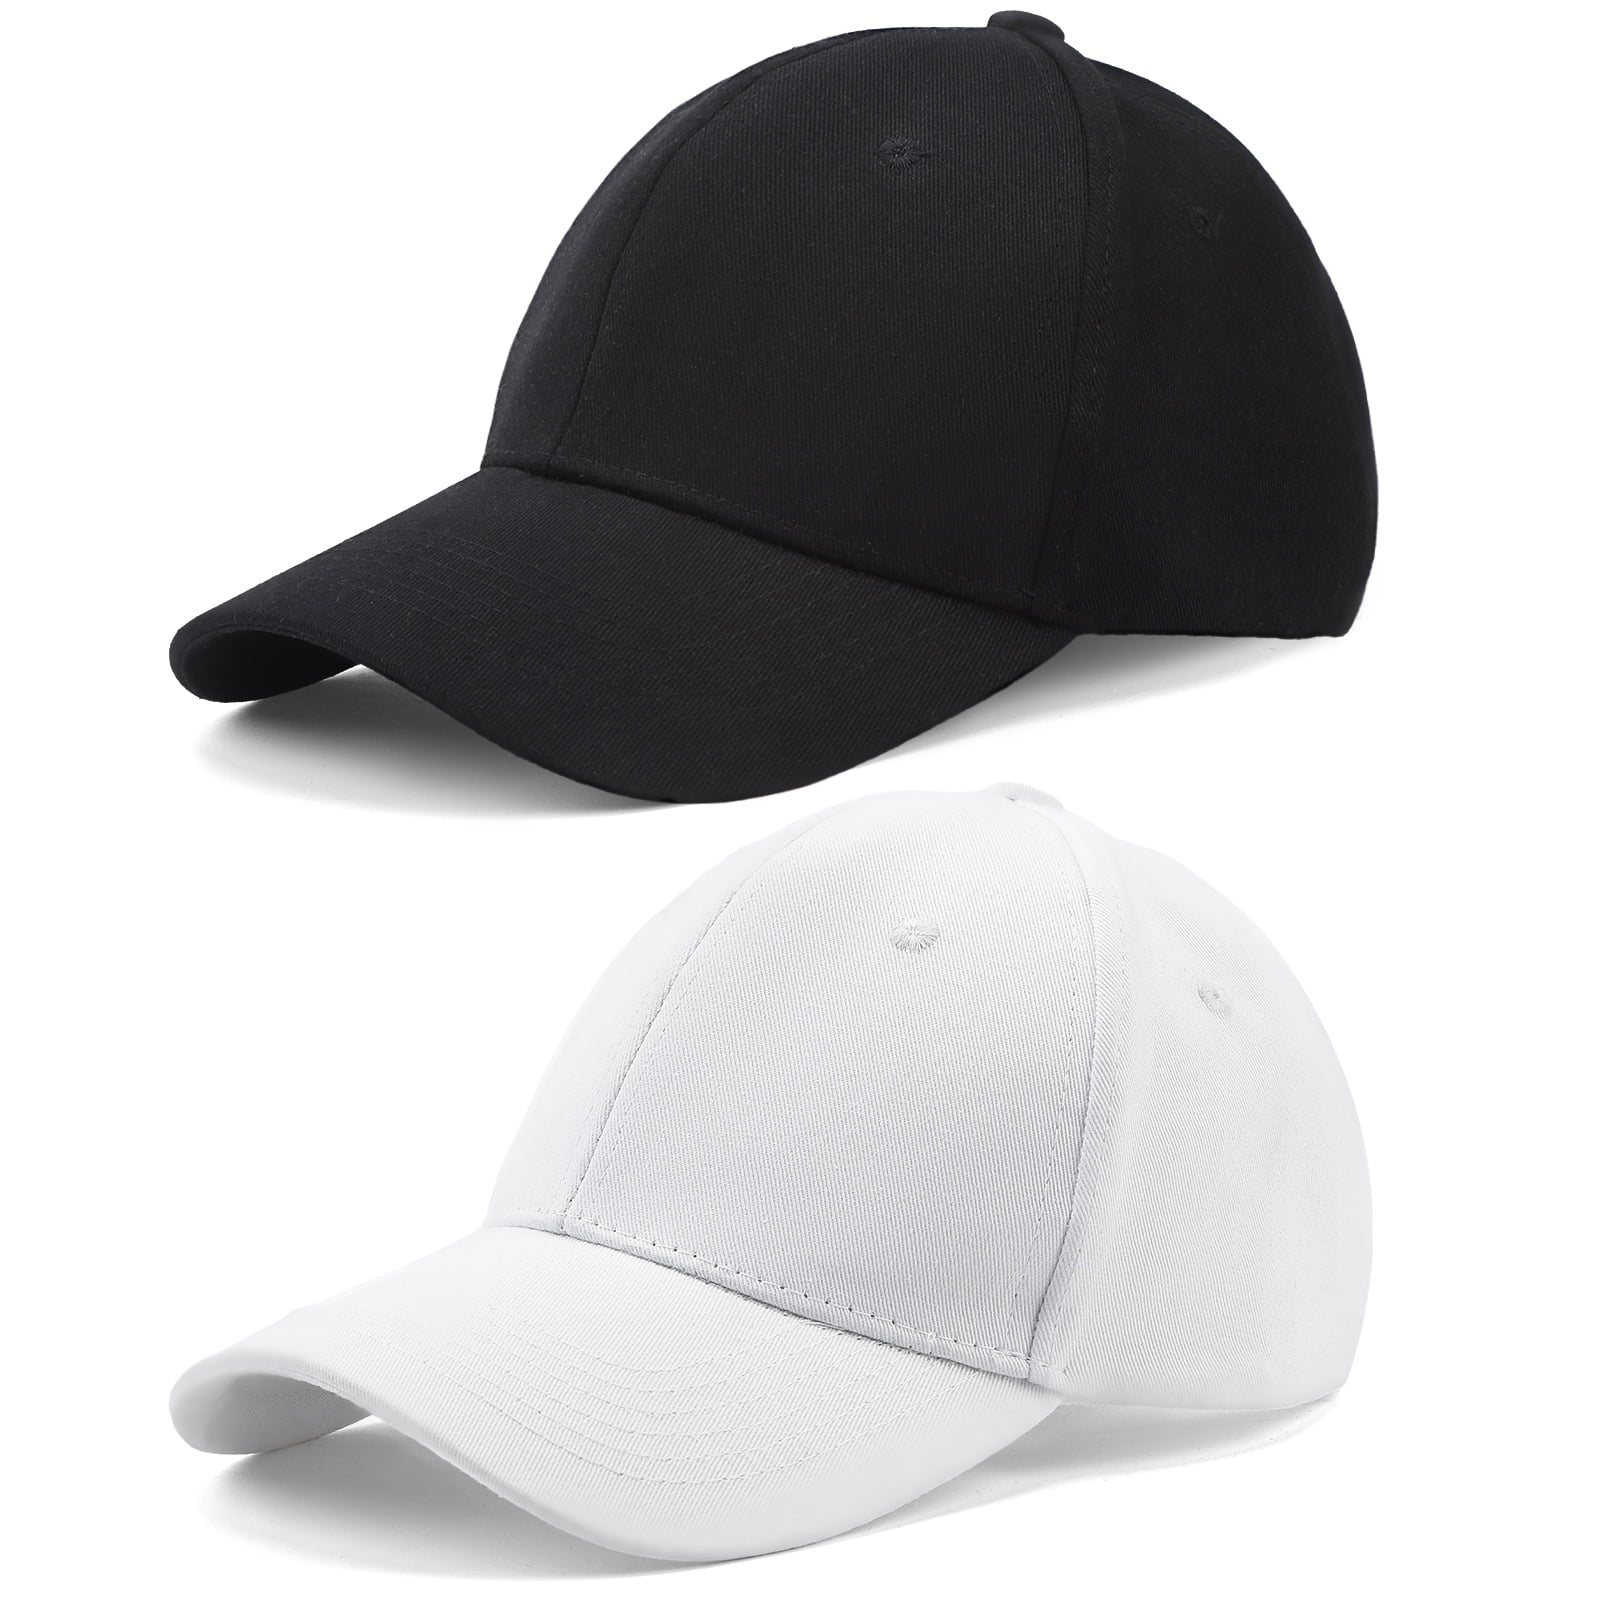 Men Washed Cotton Cadet Hat Adjustable Baseball Cap Classic Flat Top Hats  Outdoor Sports Cap 